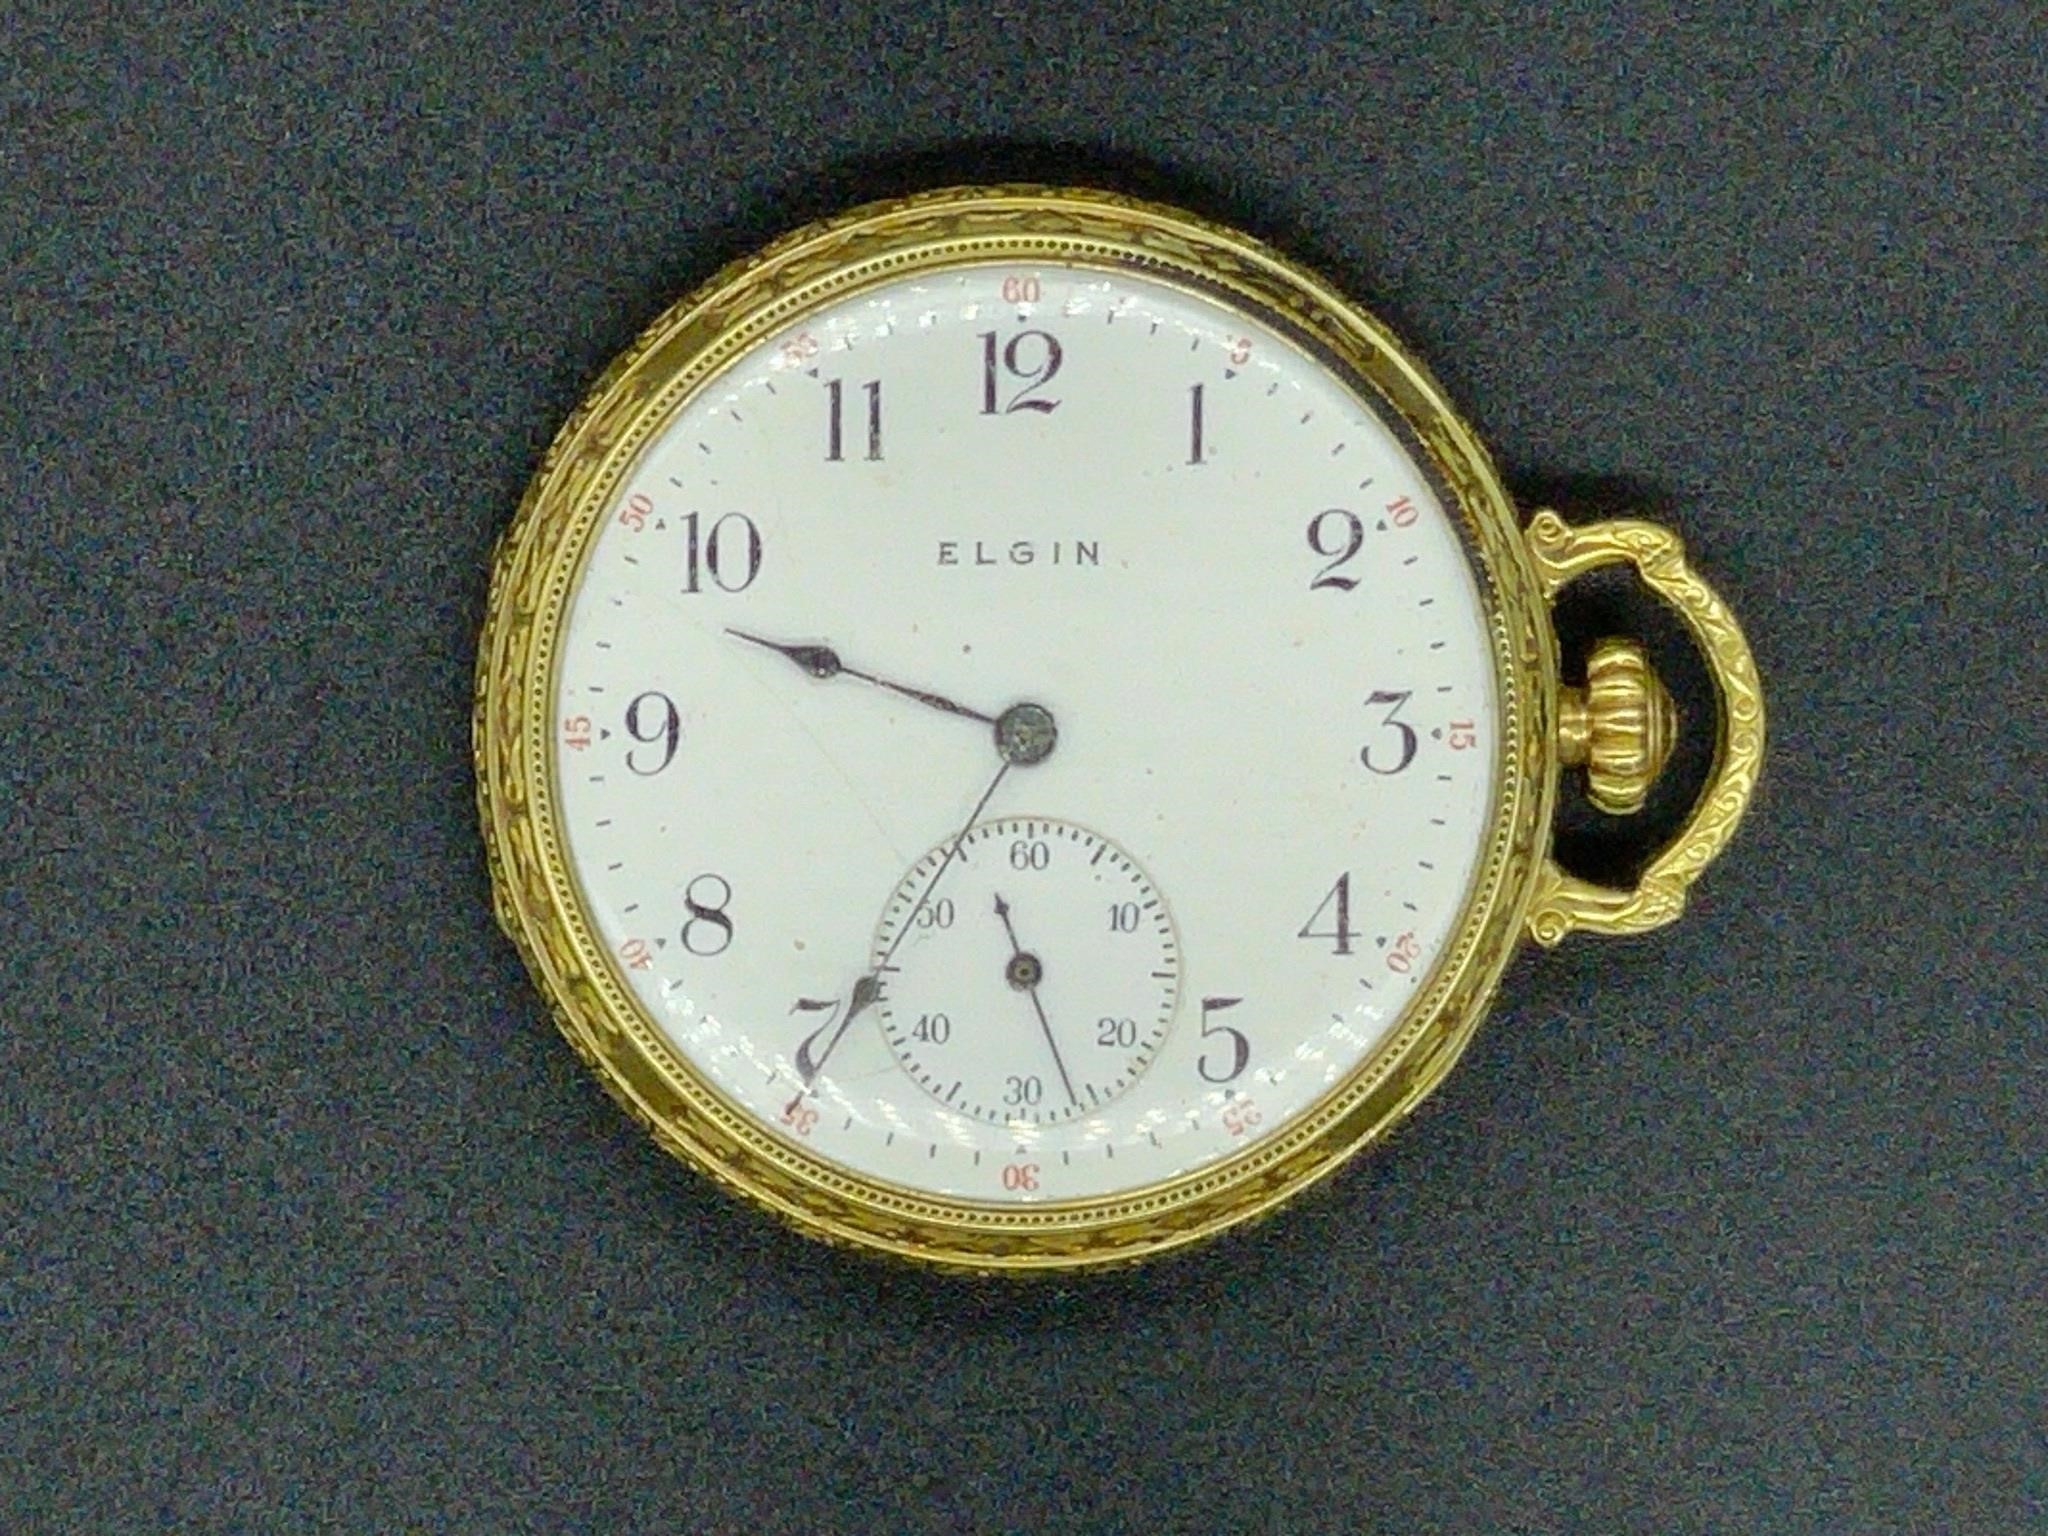 Elgin Nat. Watch Co. 14k gold filled pocket watch